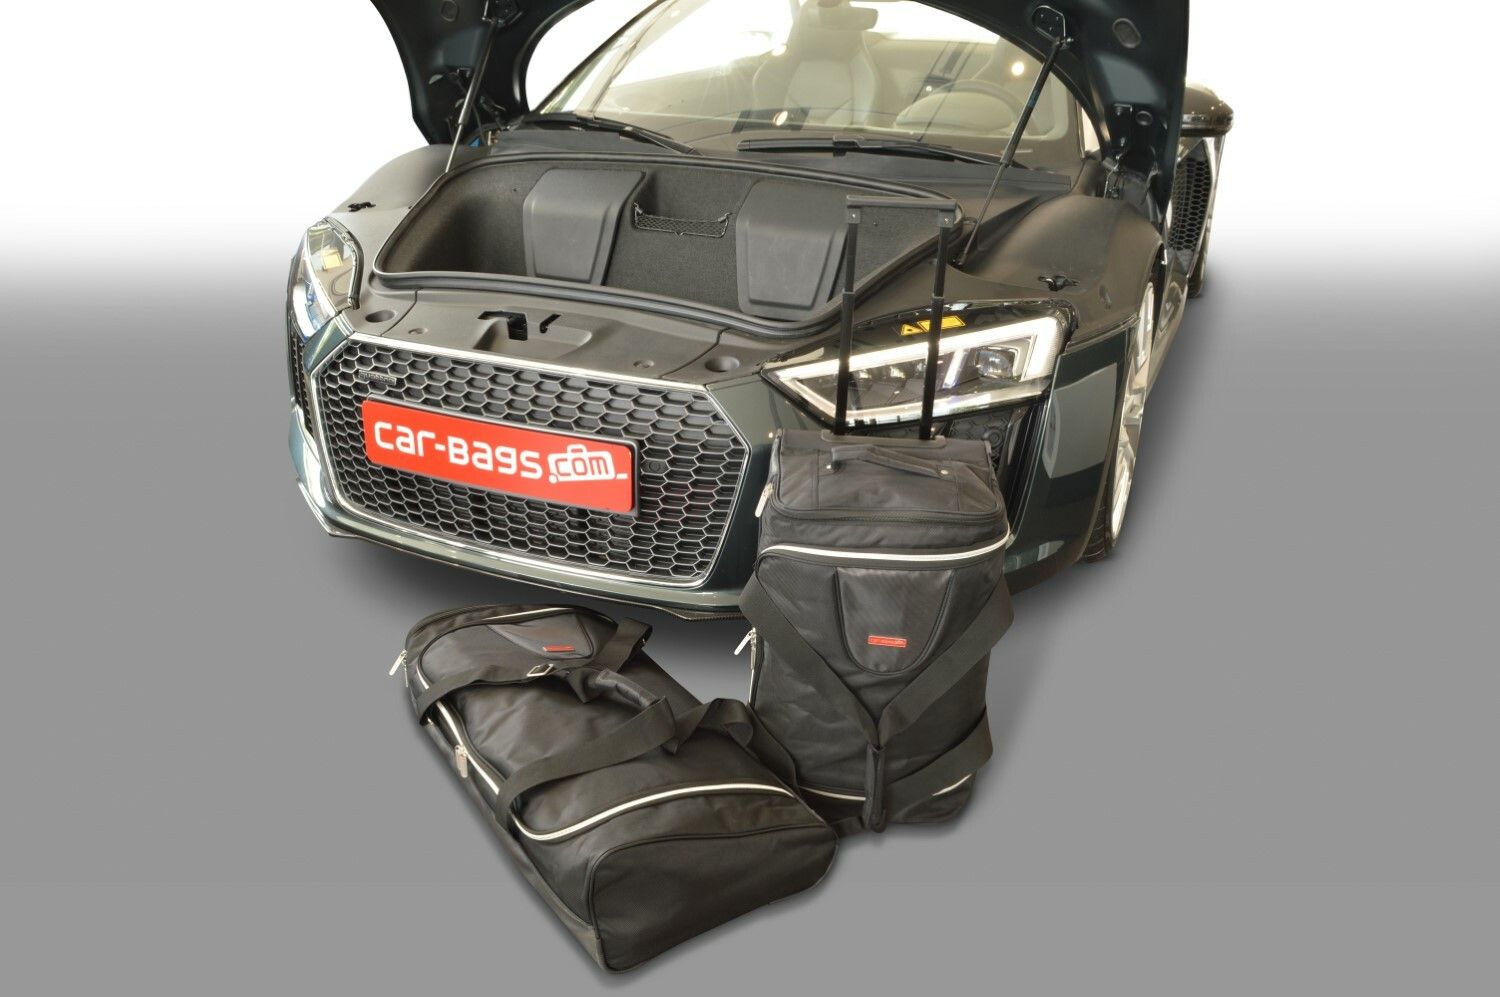 Housses de voiture Audi - Acheter des sacs de voiture pour votre voiture?